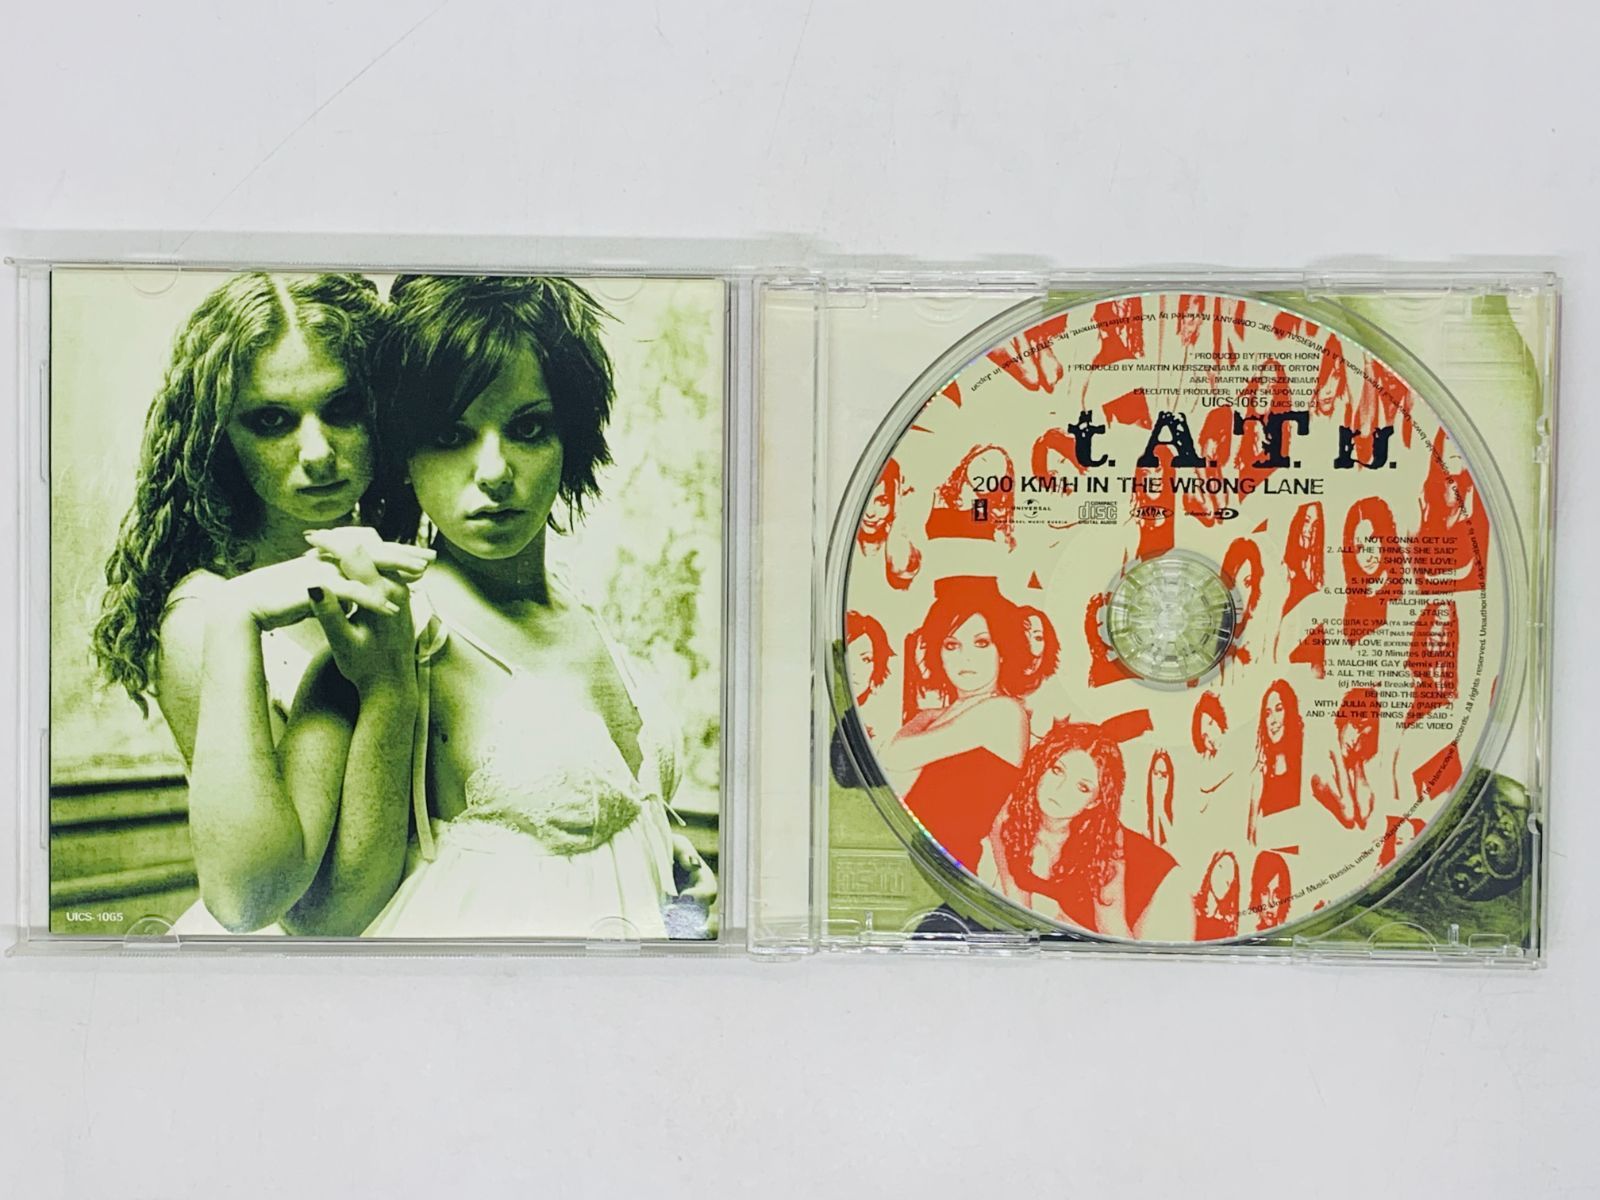 CD t.A.T.u 200 KM/H IN THE WRONG LANE / タトゥー Tatu / アルバム